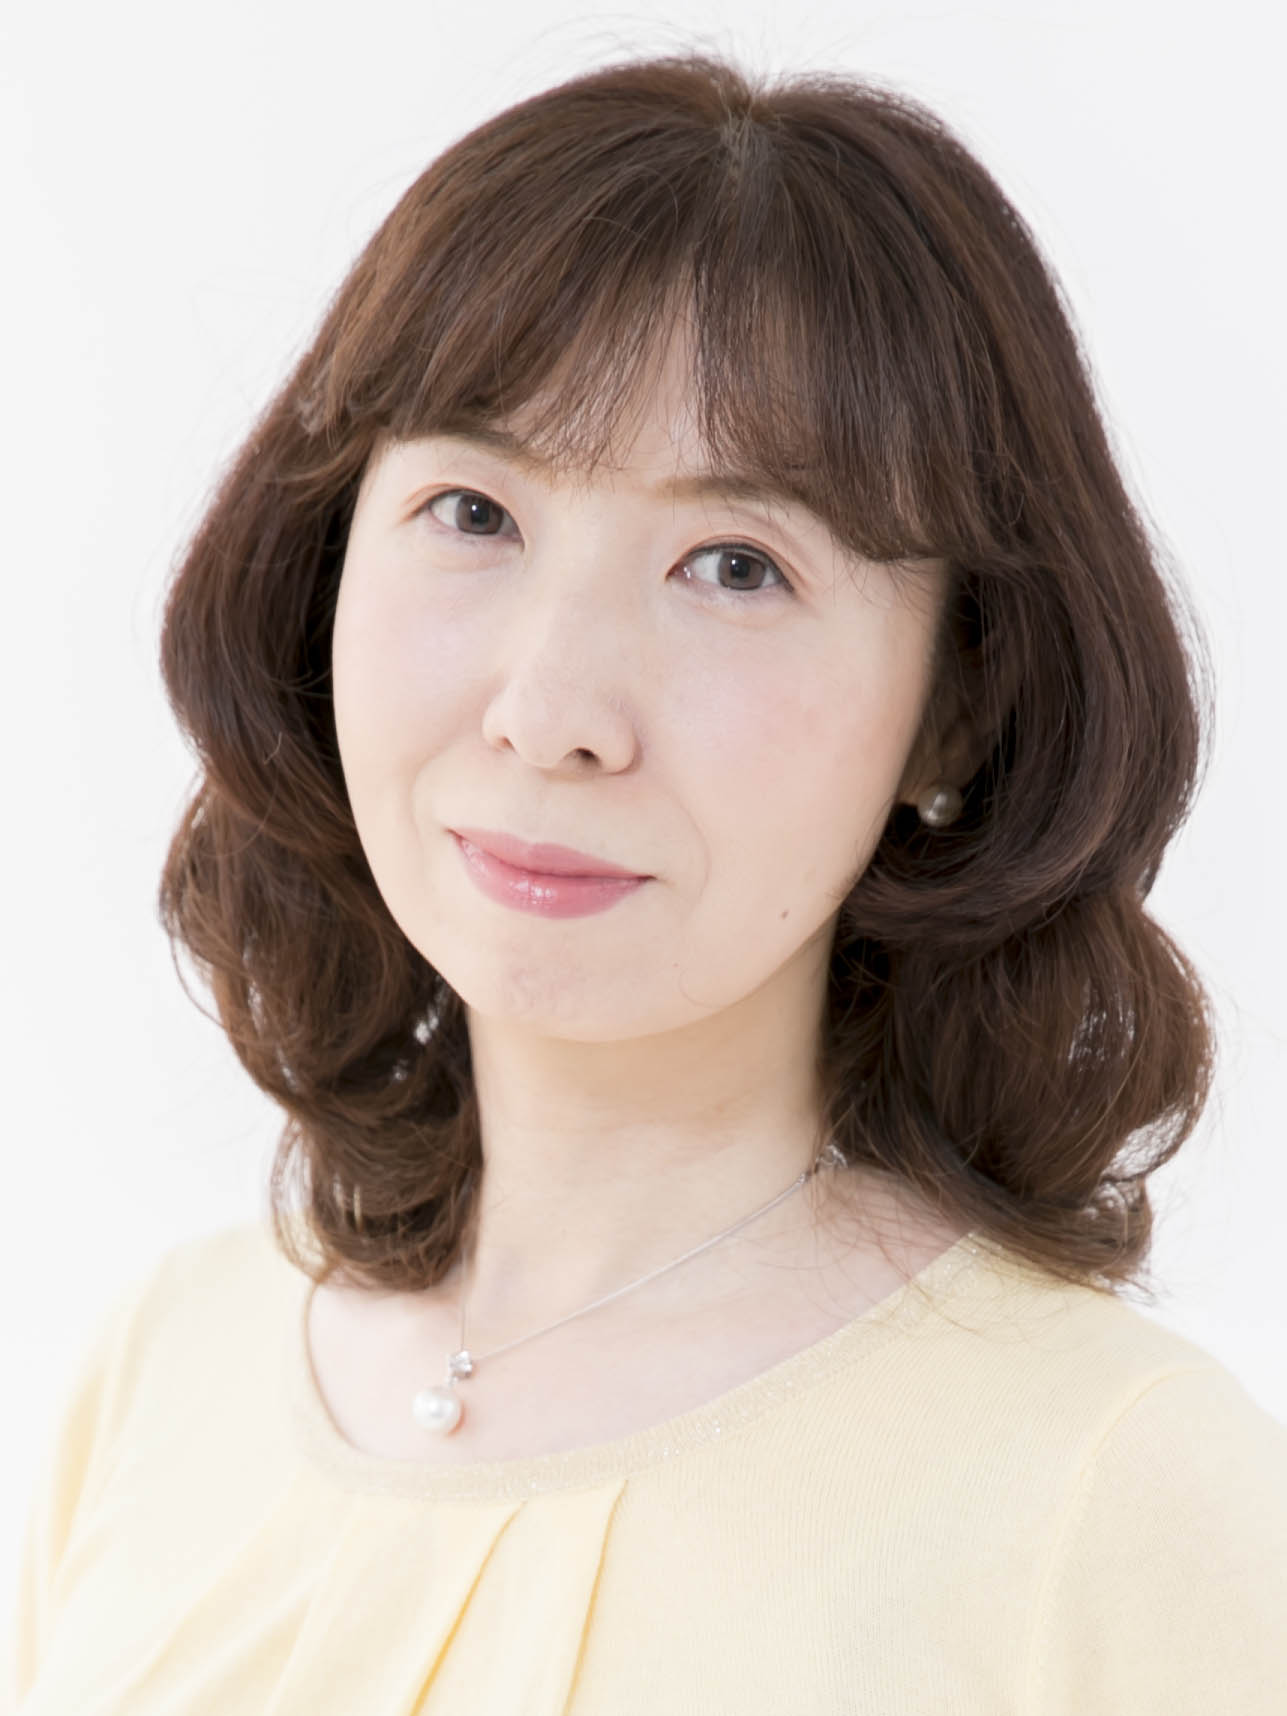 山本 洋子 Profile Maimu 舞夢プロ 東京 大阪の芸能プロダクション